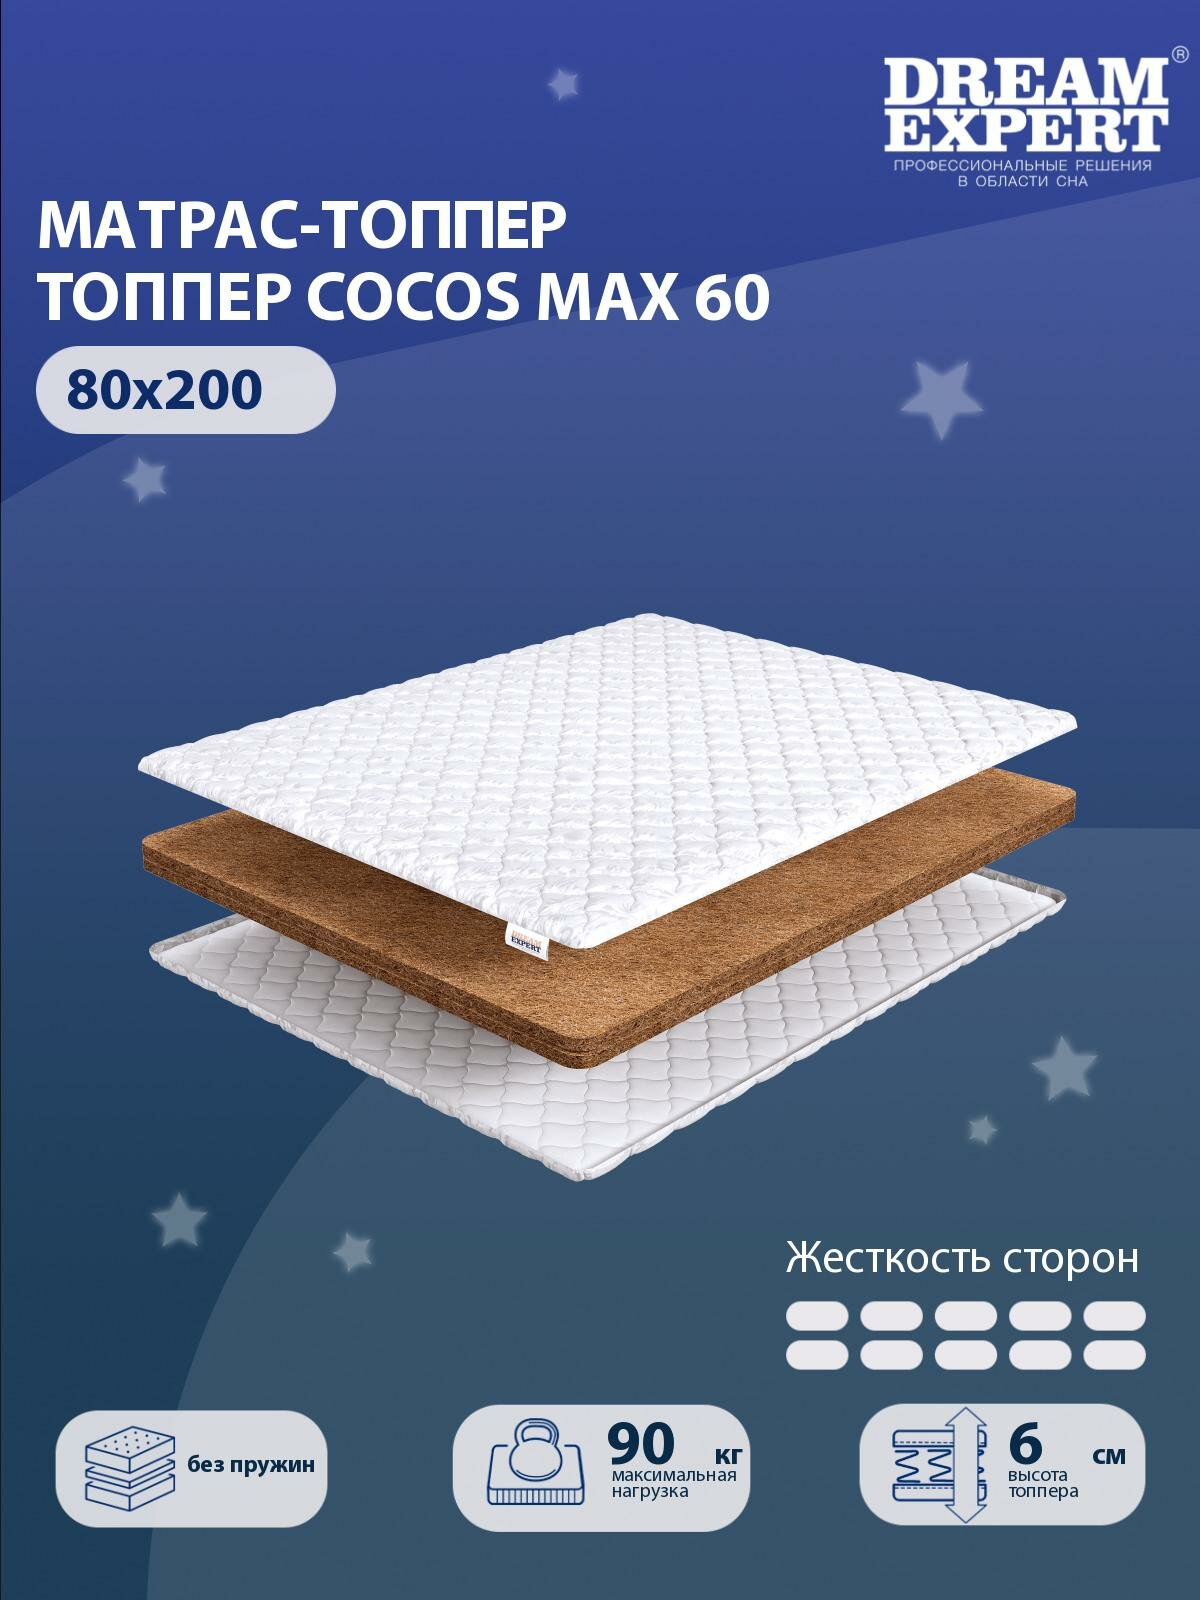 Матрас-топпер, Топпер-наматрасник DreamExpert Cocos max 60 тонкий матрас, на резинке, Беспружинный, хлопковый, на кровать 80x200